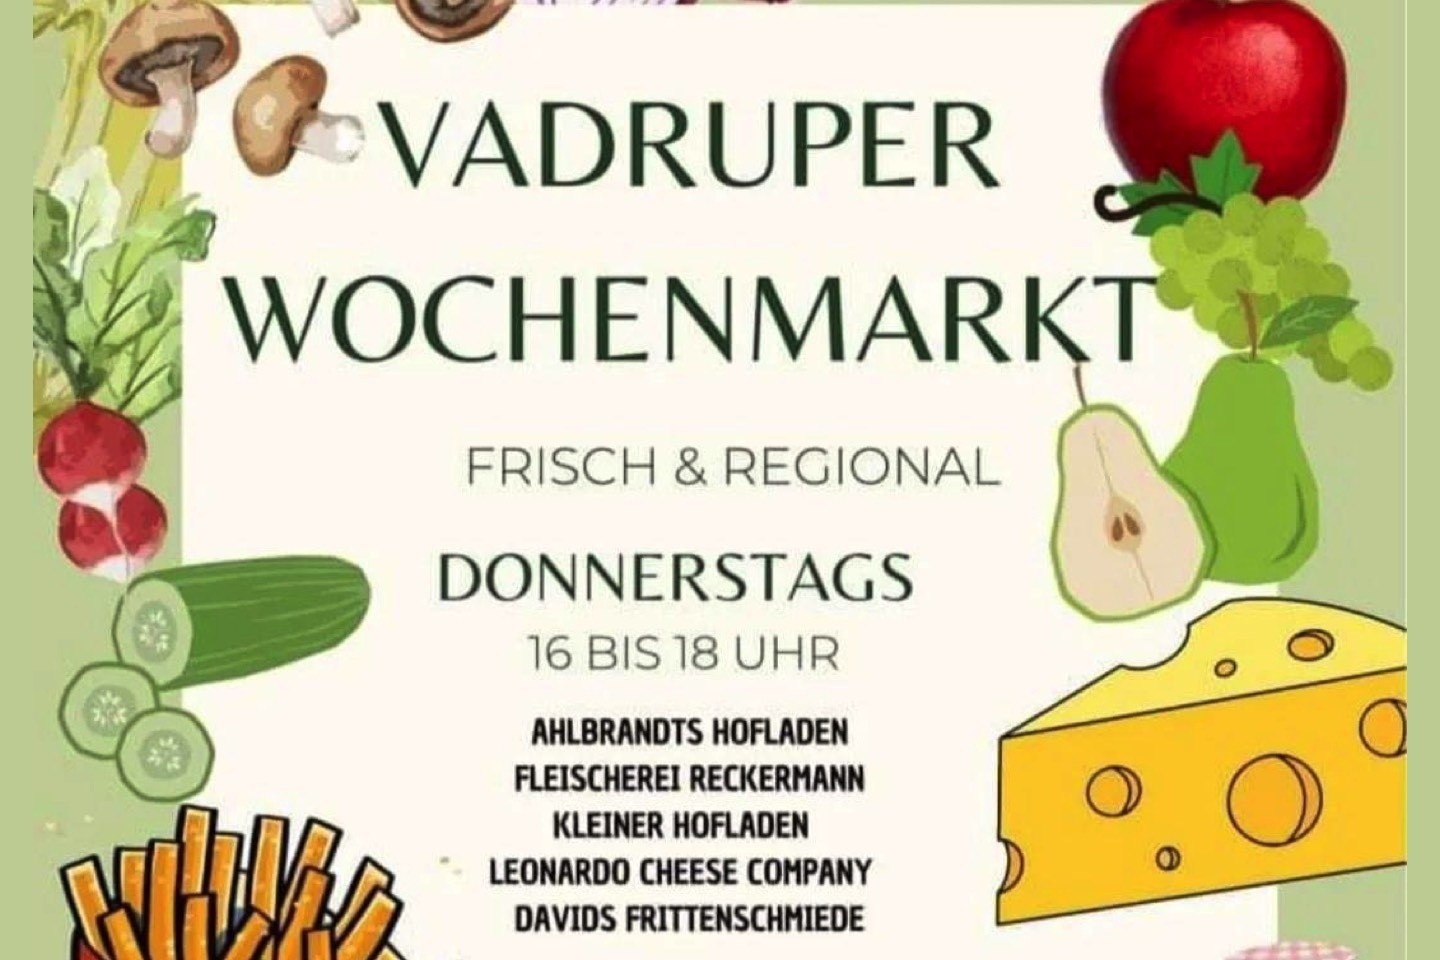 Vadruper Wochenmarkt,Wochenmarkt,Westbevern,Brinker Platz,Landfleischerei Reckermann,